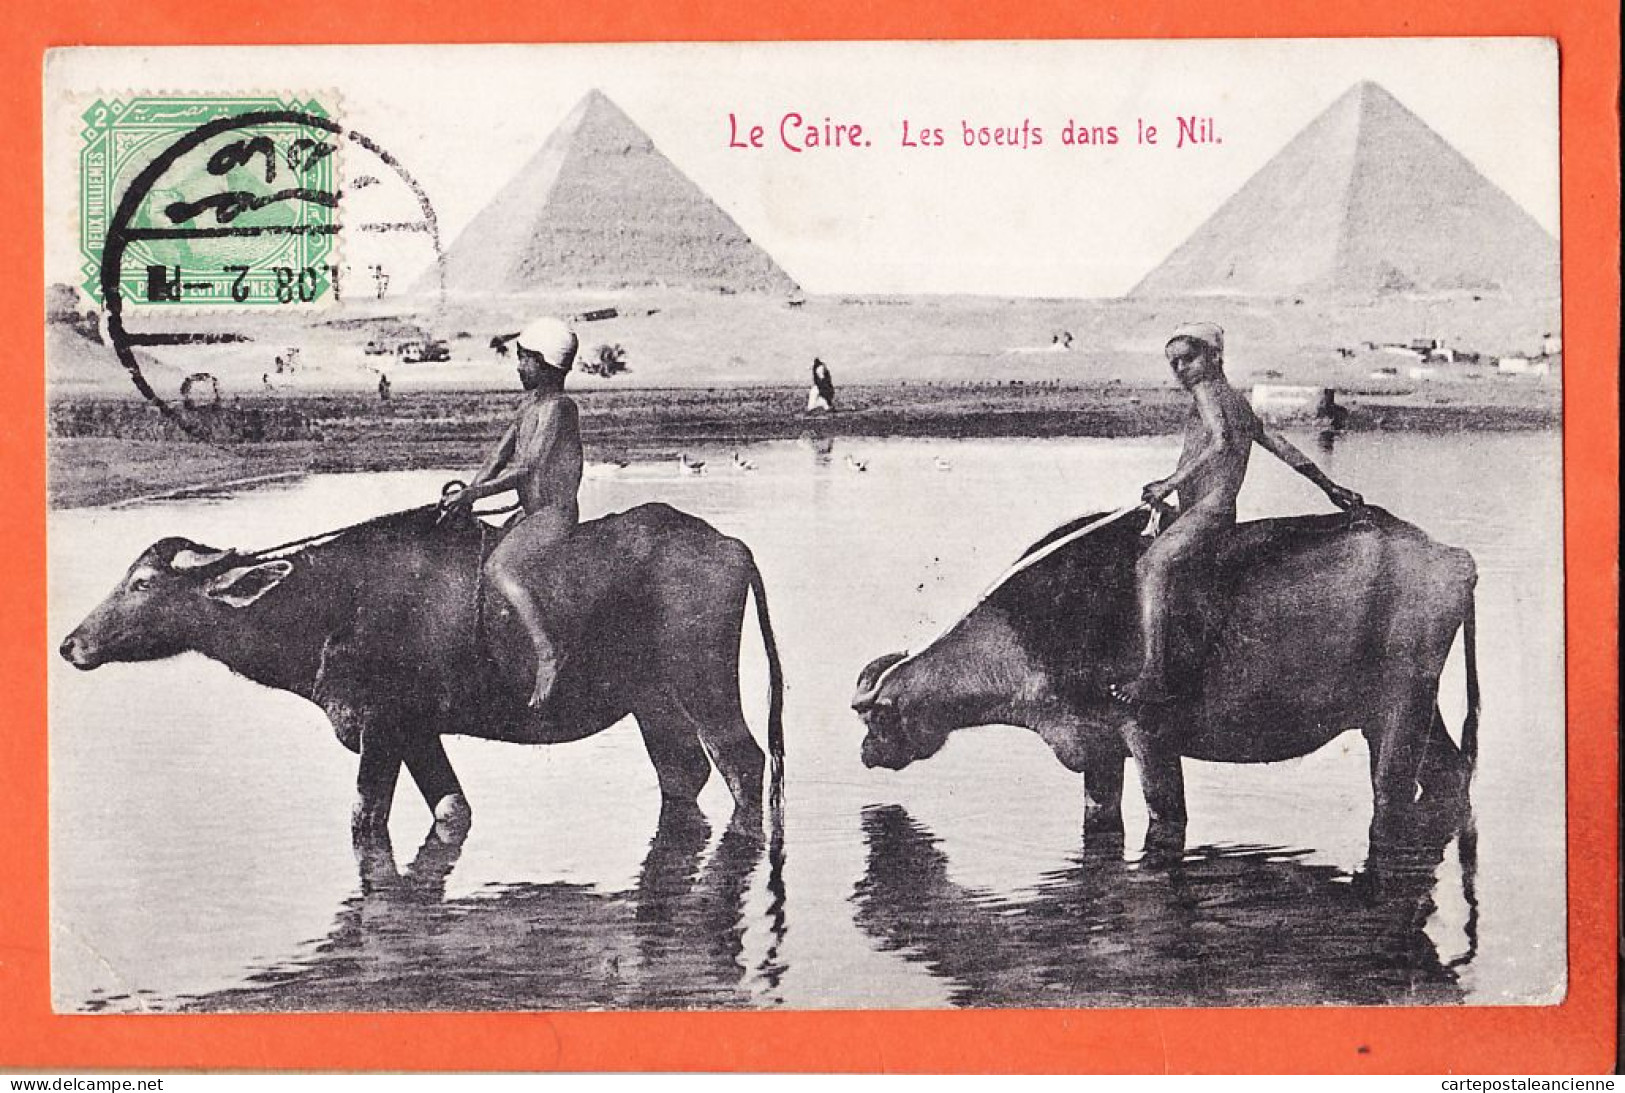 21973 / ⭐ ◉ LE CAIRE Egypte ◉  Boeufs Dans NIL Buffles  2 Pyramides GIZEH 1908 ◉ Papeterie CARTOSPORT Max RUDMANN  - Kairo